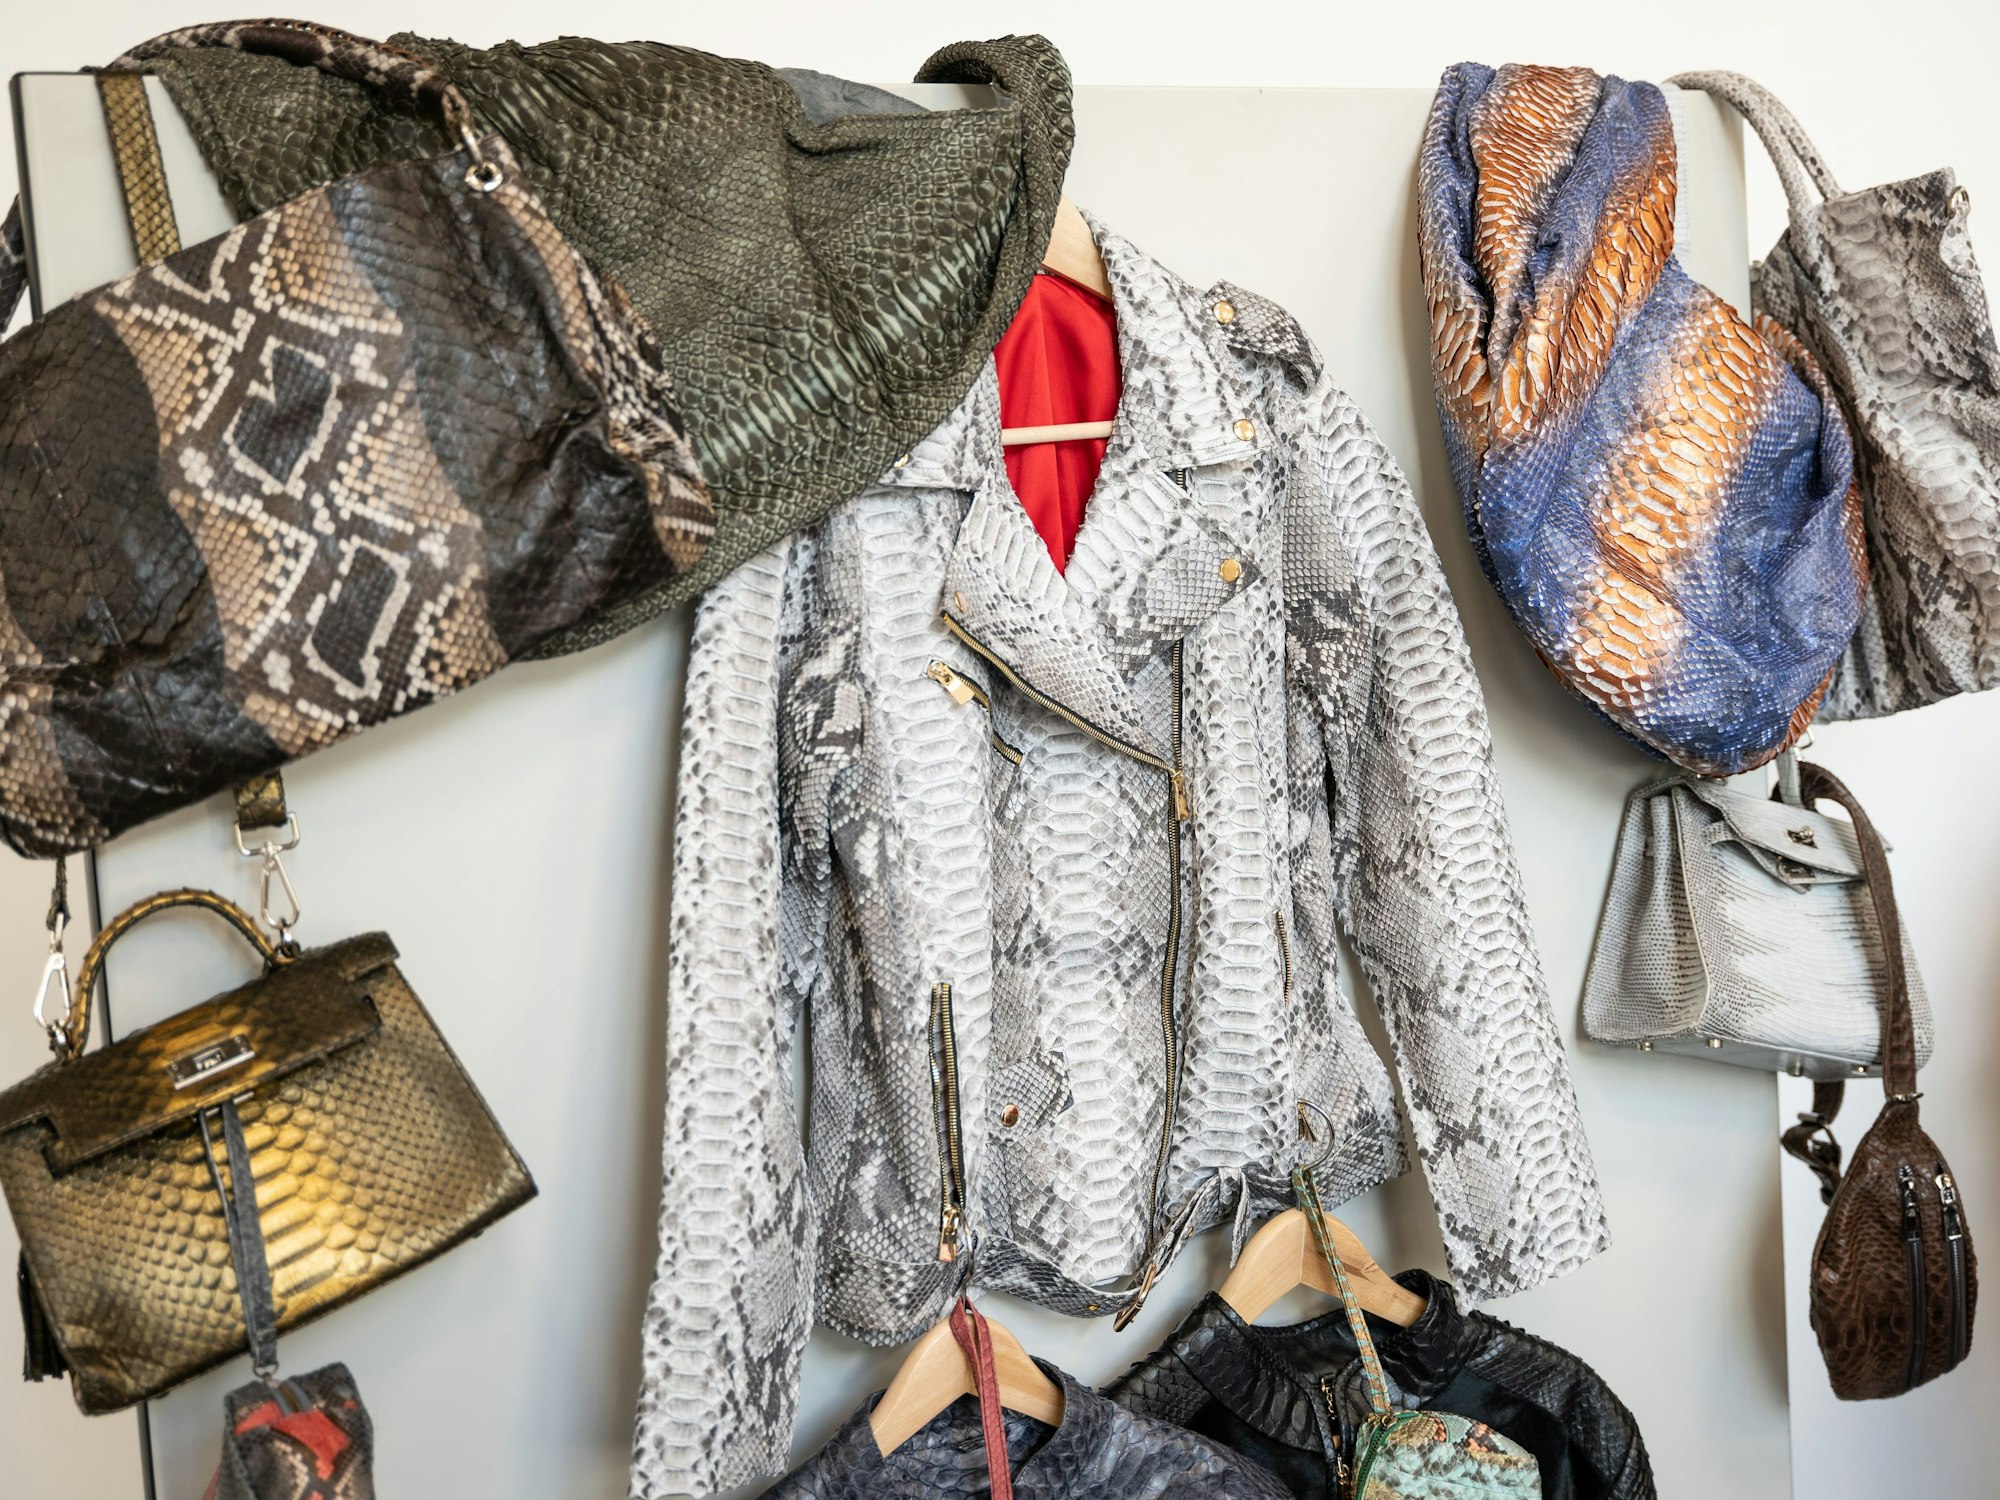 Kleidungsstücke und Taschen aus Python- beziehungsweise Krokodilleder hängen an einer Wand.